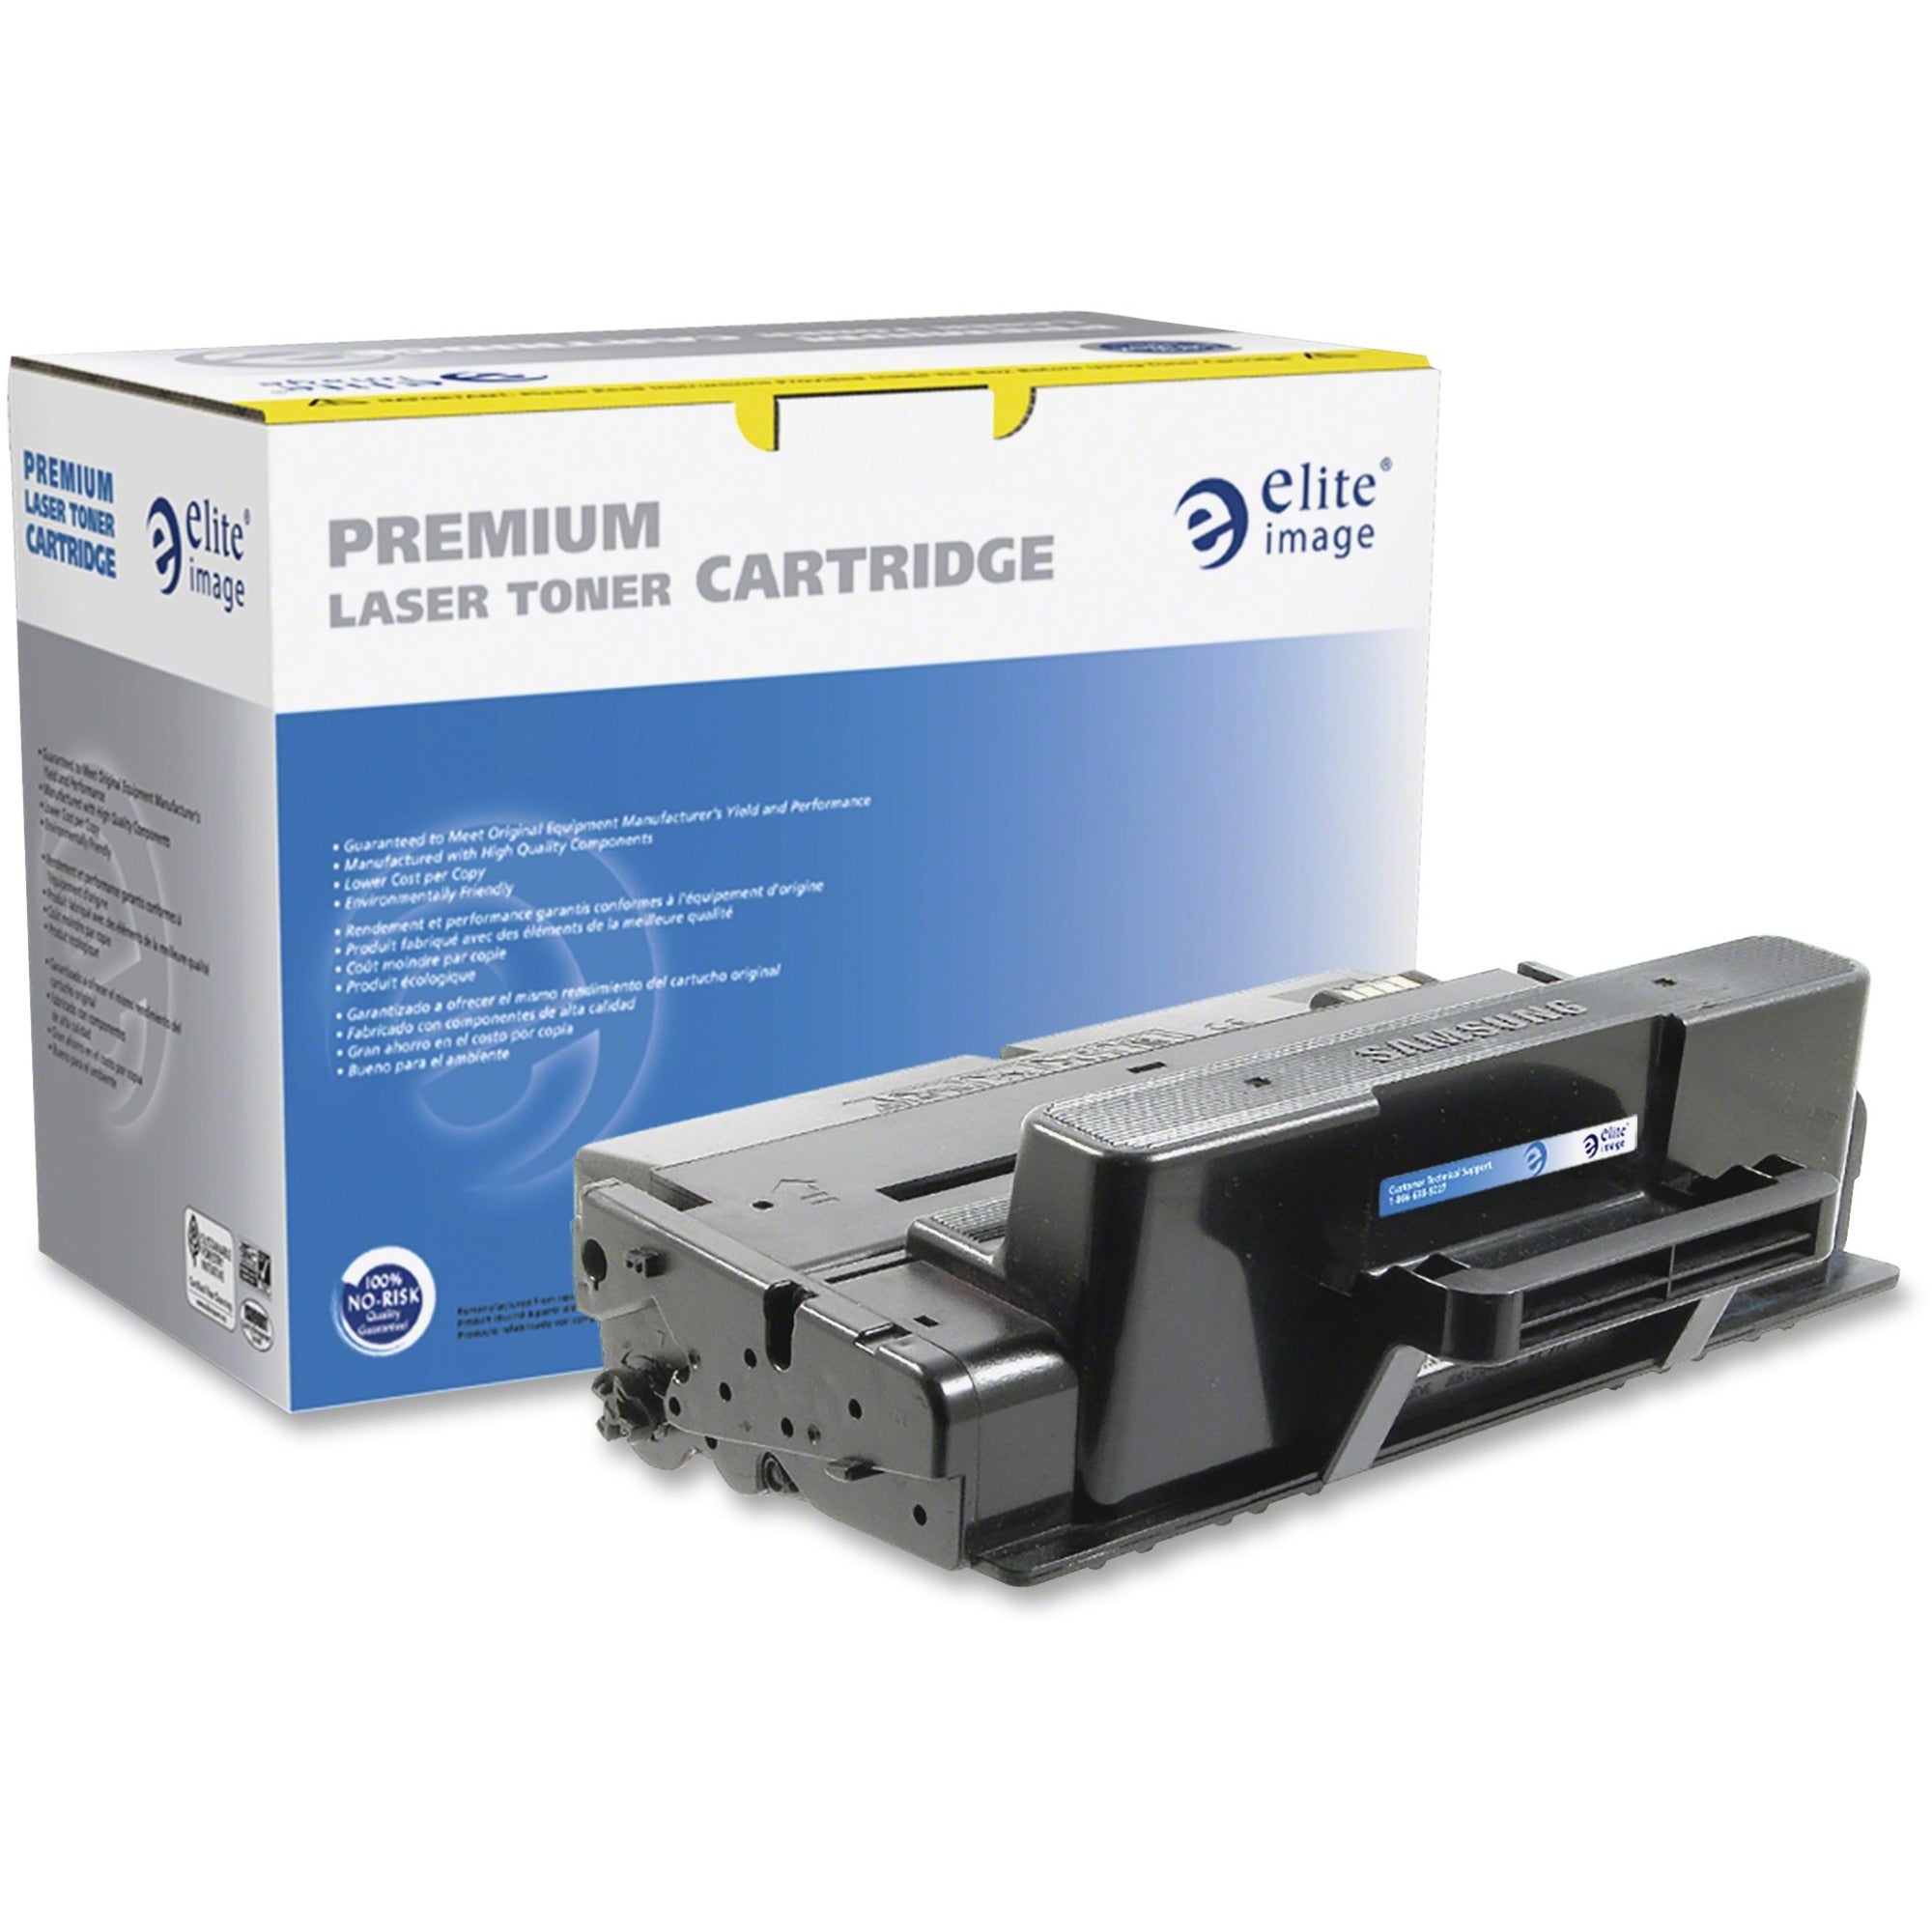 Elite Image Remanufactured High Yield Laser Toner Cartridge - Alternative for Samsung MLTD205L - Black - 1 Each - 5000 Pages - 1